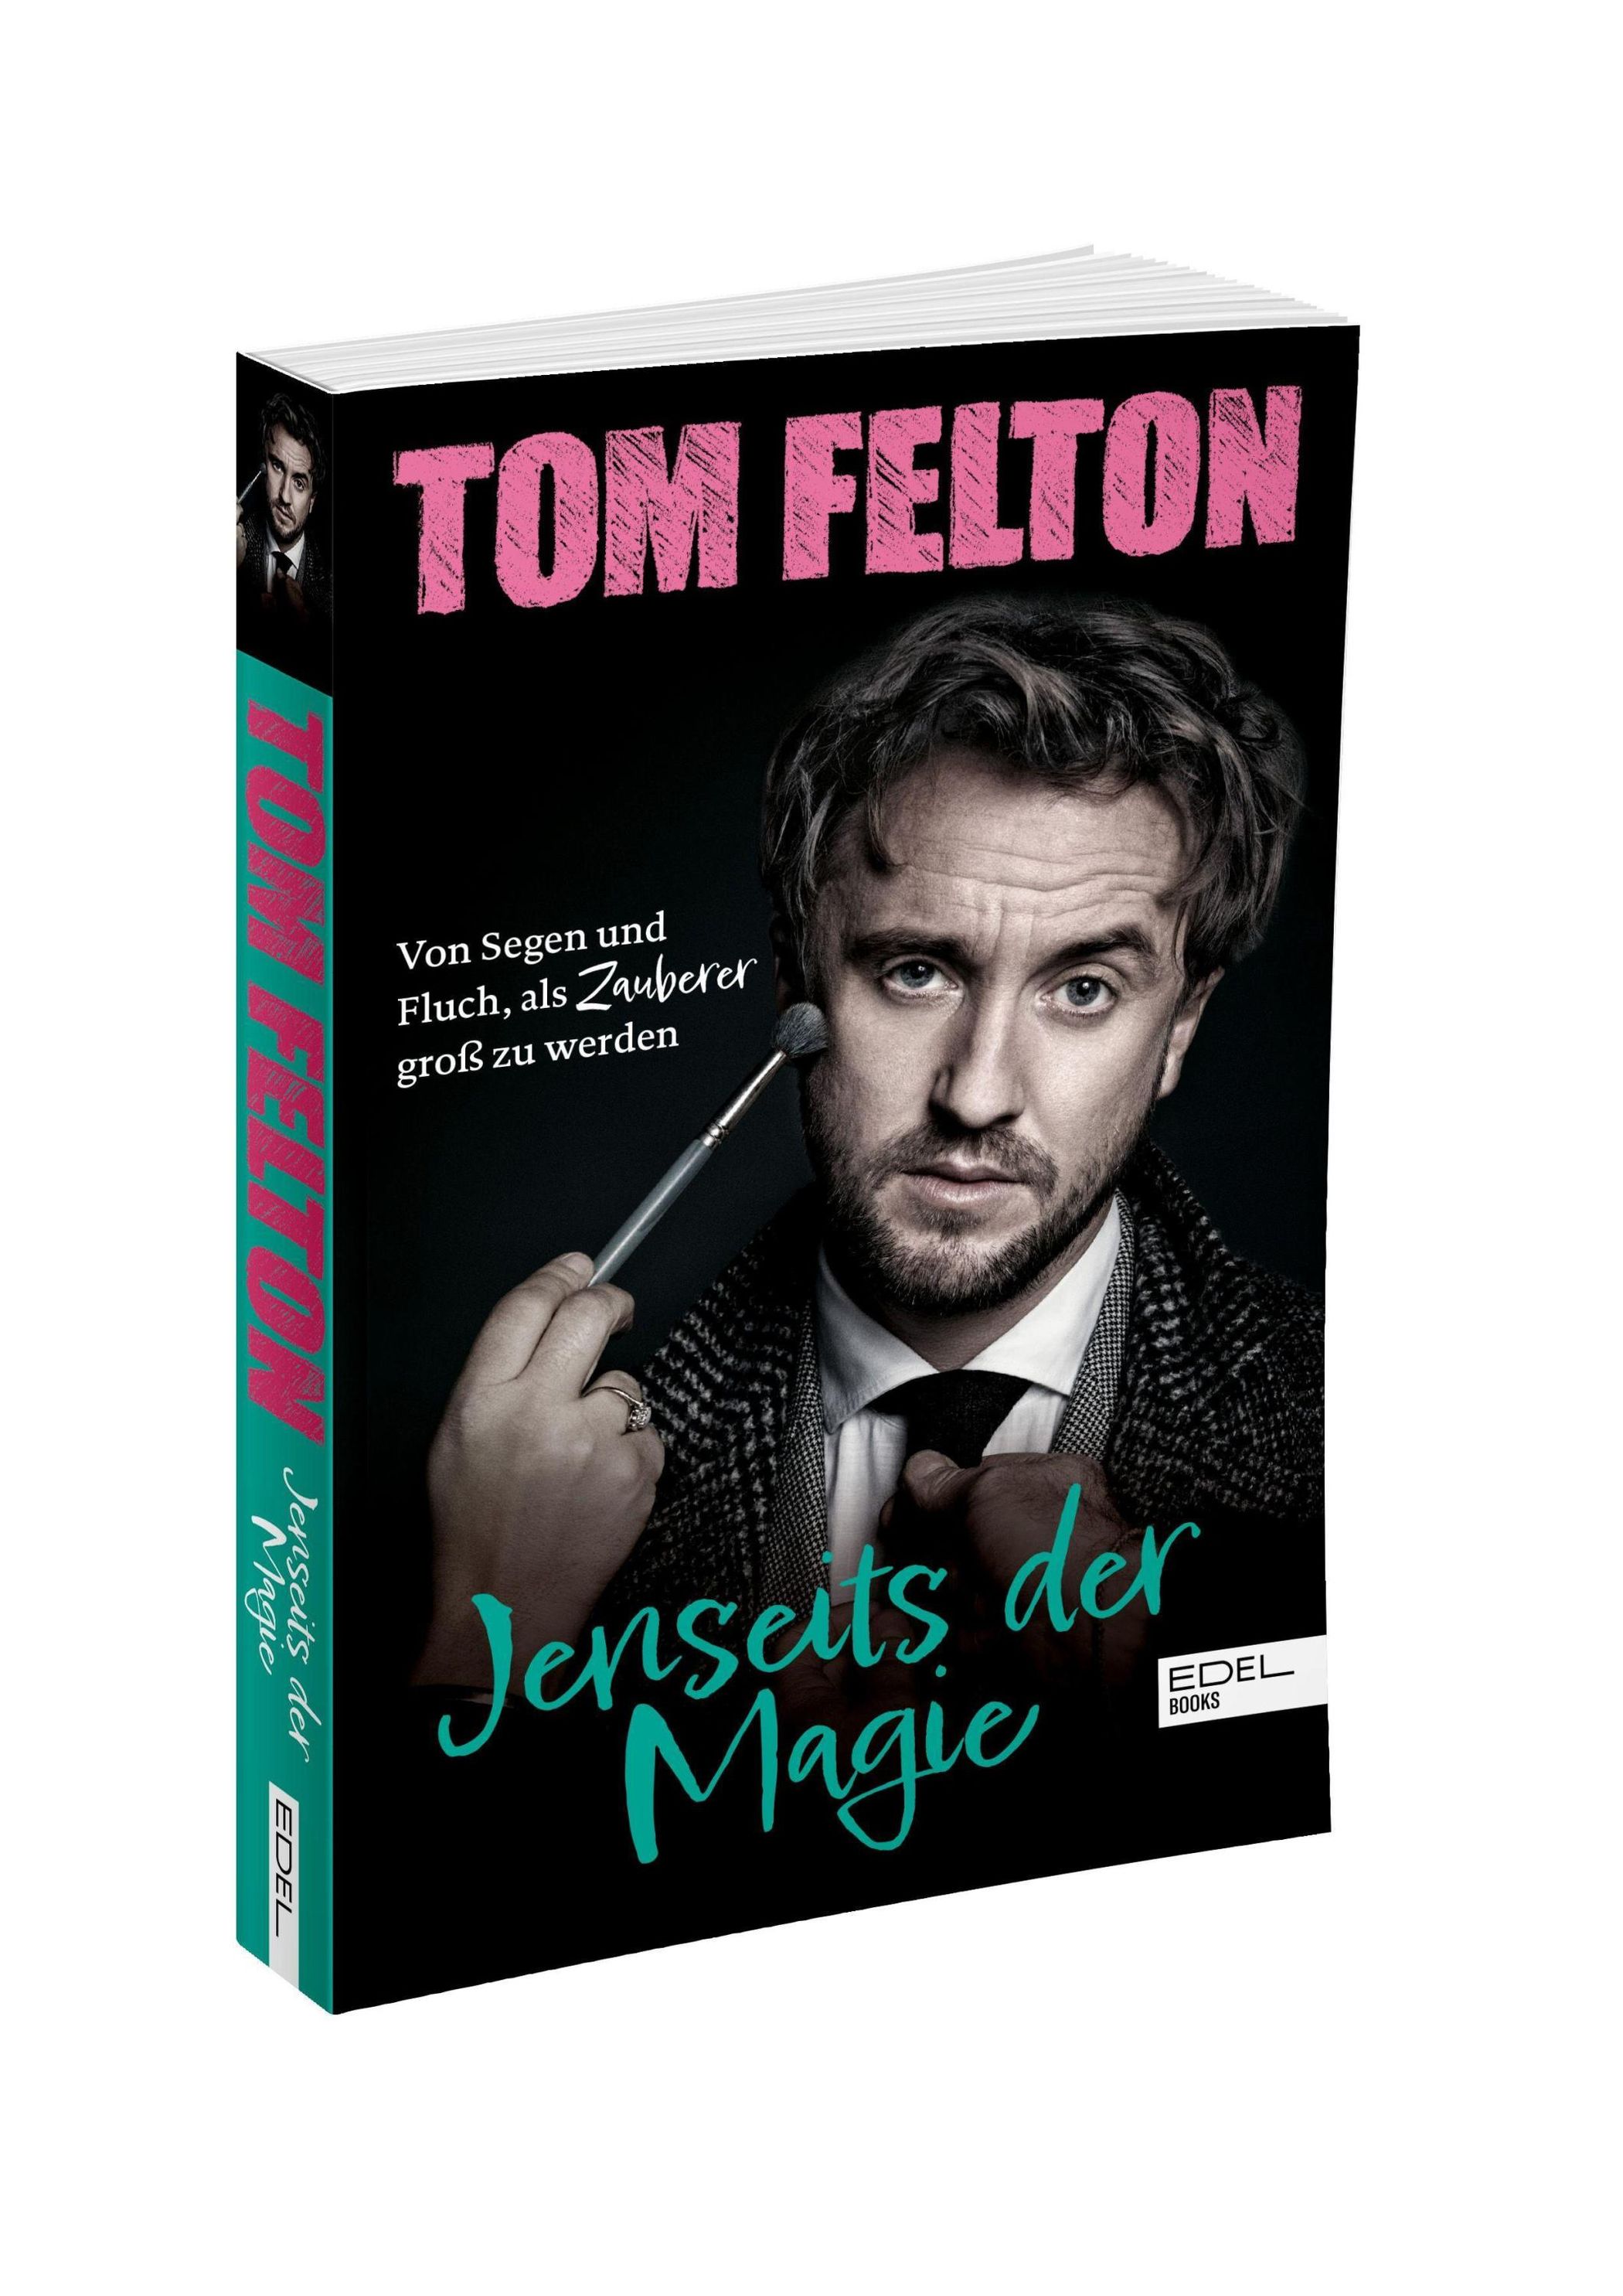 Jenseits der Magie Buch von Tom Felton versandkostenfrei bei Weltbild.at